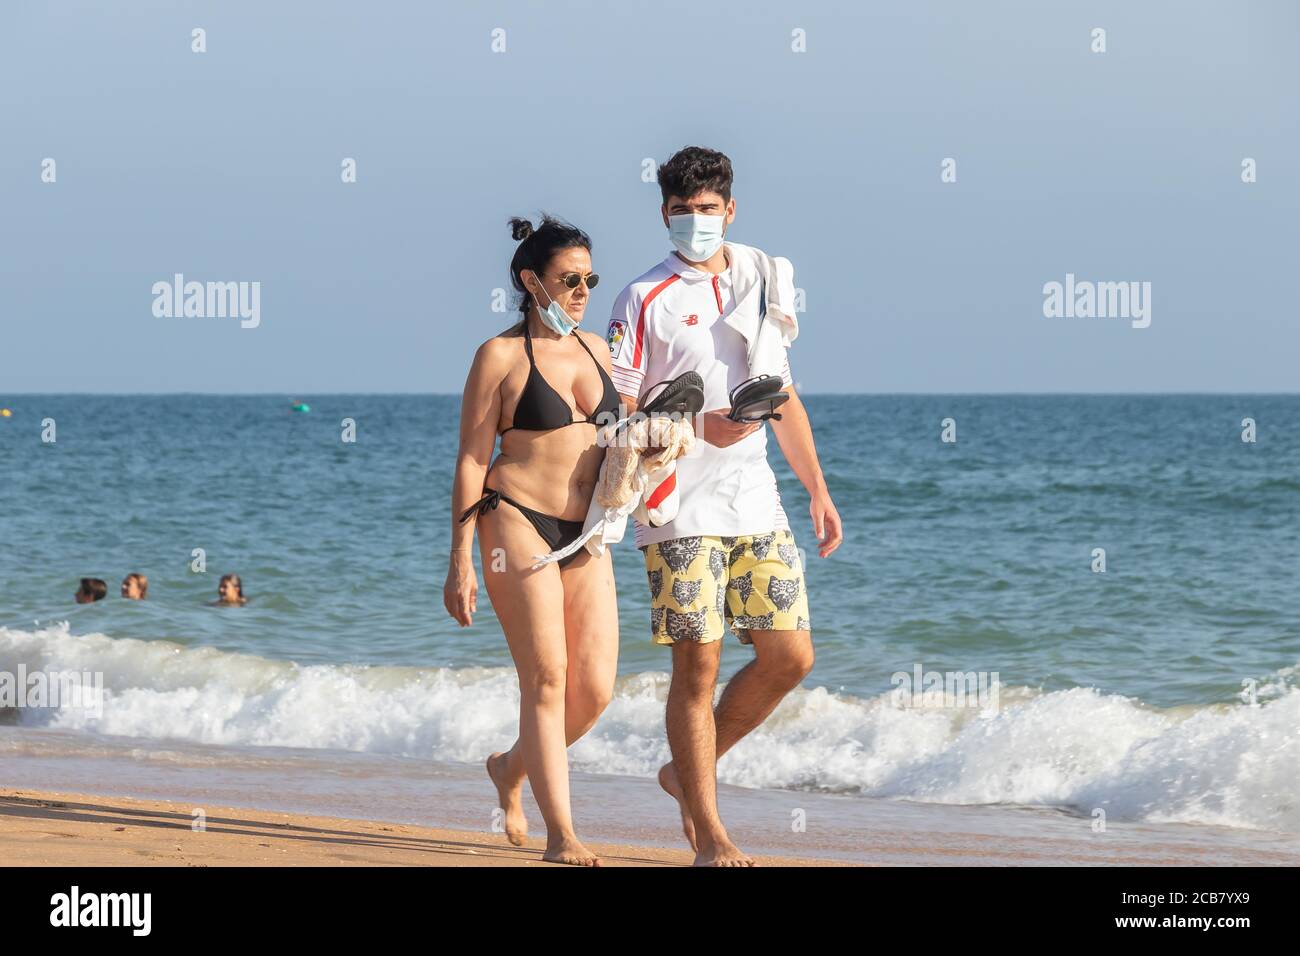 Punta Umbria, Huelva, Espagne - 7 août 2020 : couple marchant sur la plage en portant des masques protecteurs ou médicaux. Nouvelle normale en Espagne avec di social Banque D'Images